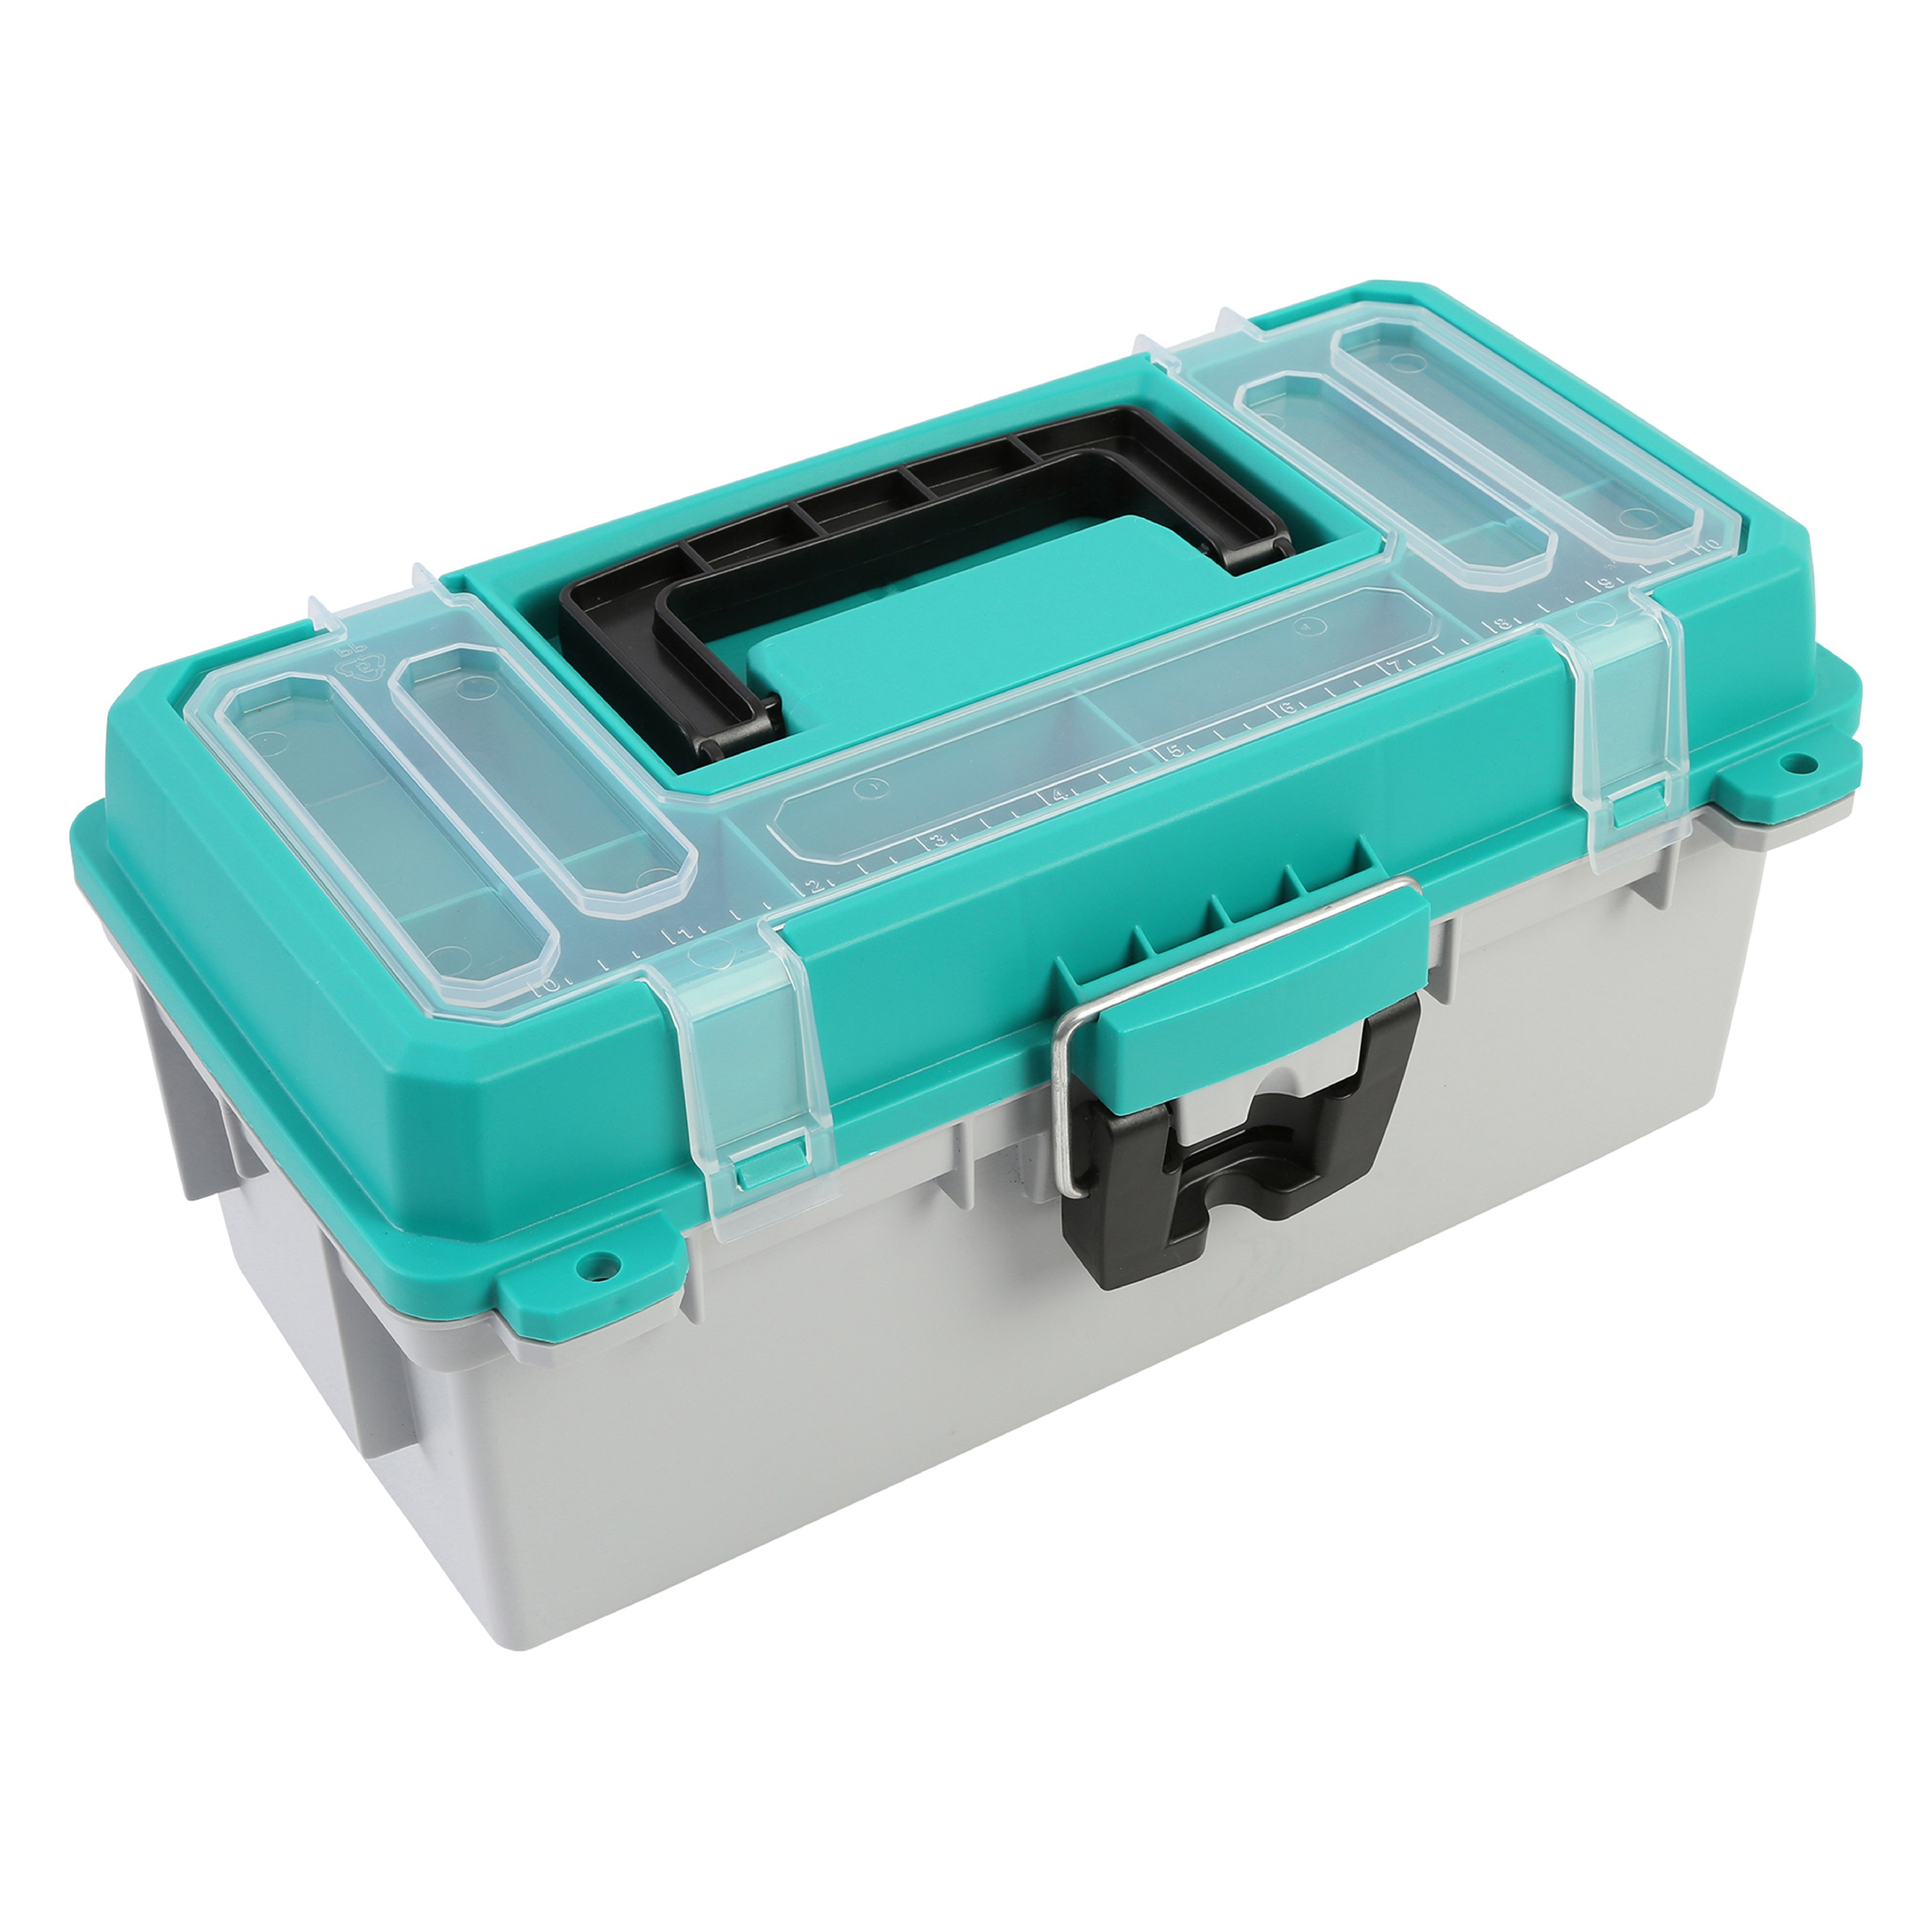 13 Tackle Box Portable Tool Boxes at